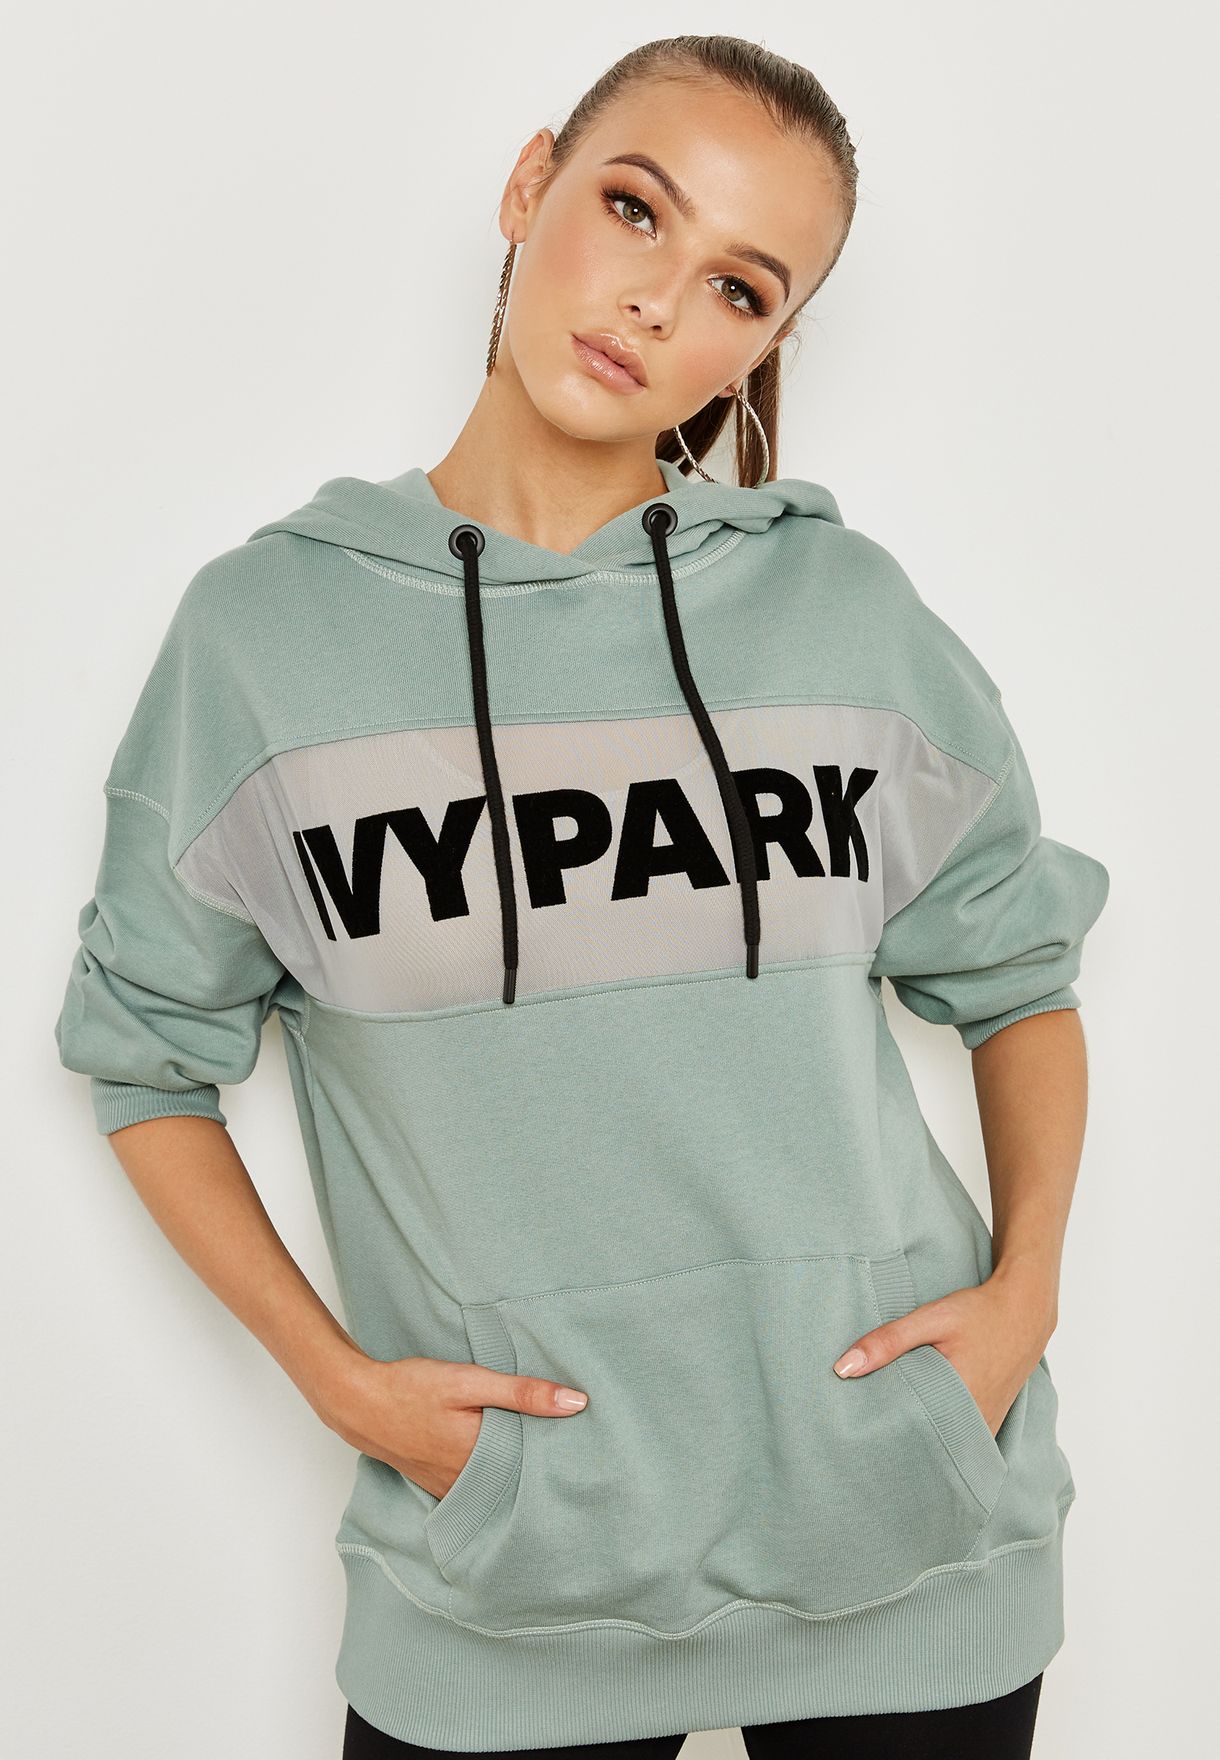 ivy park hoodie women's